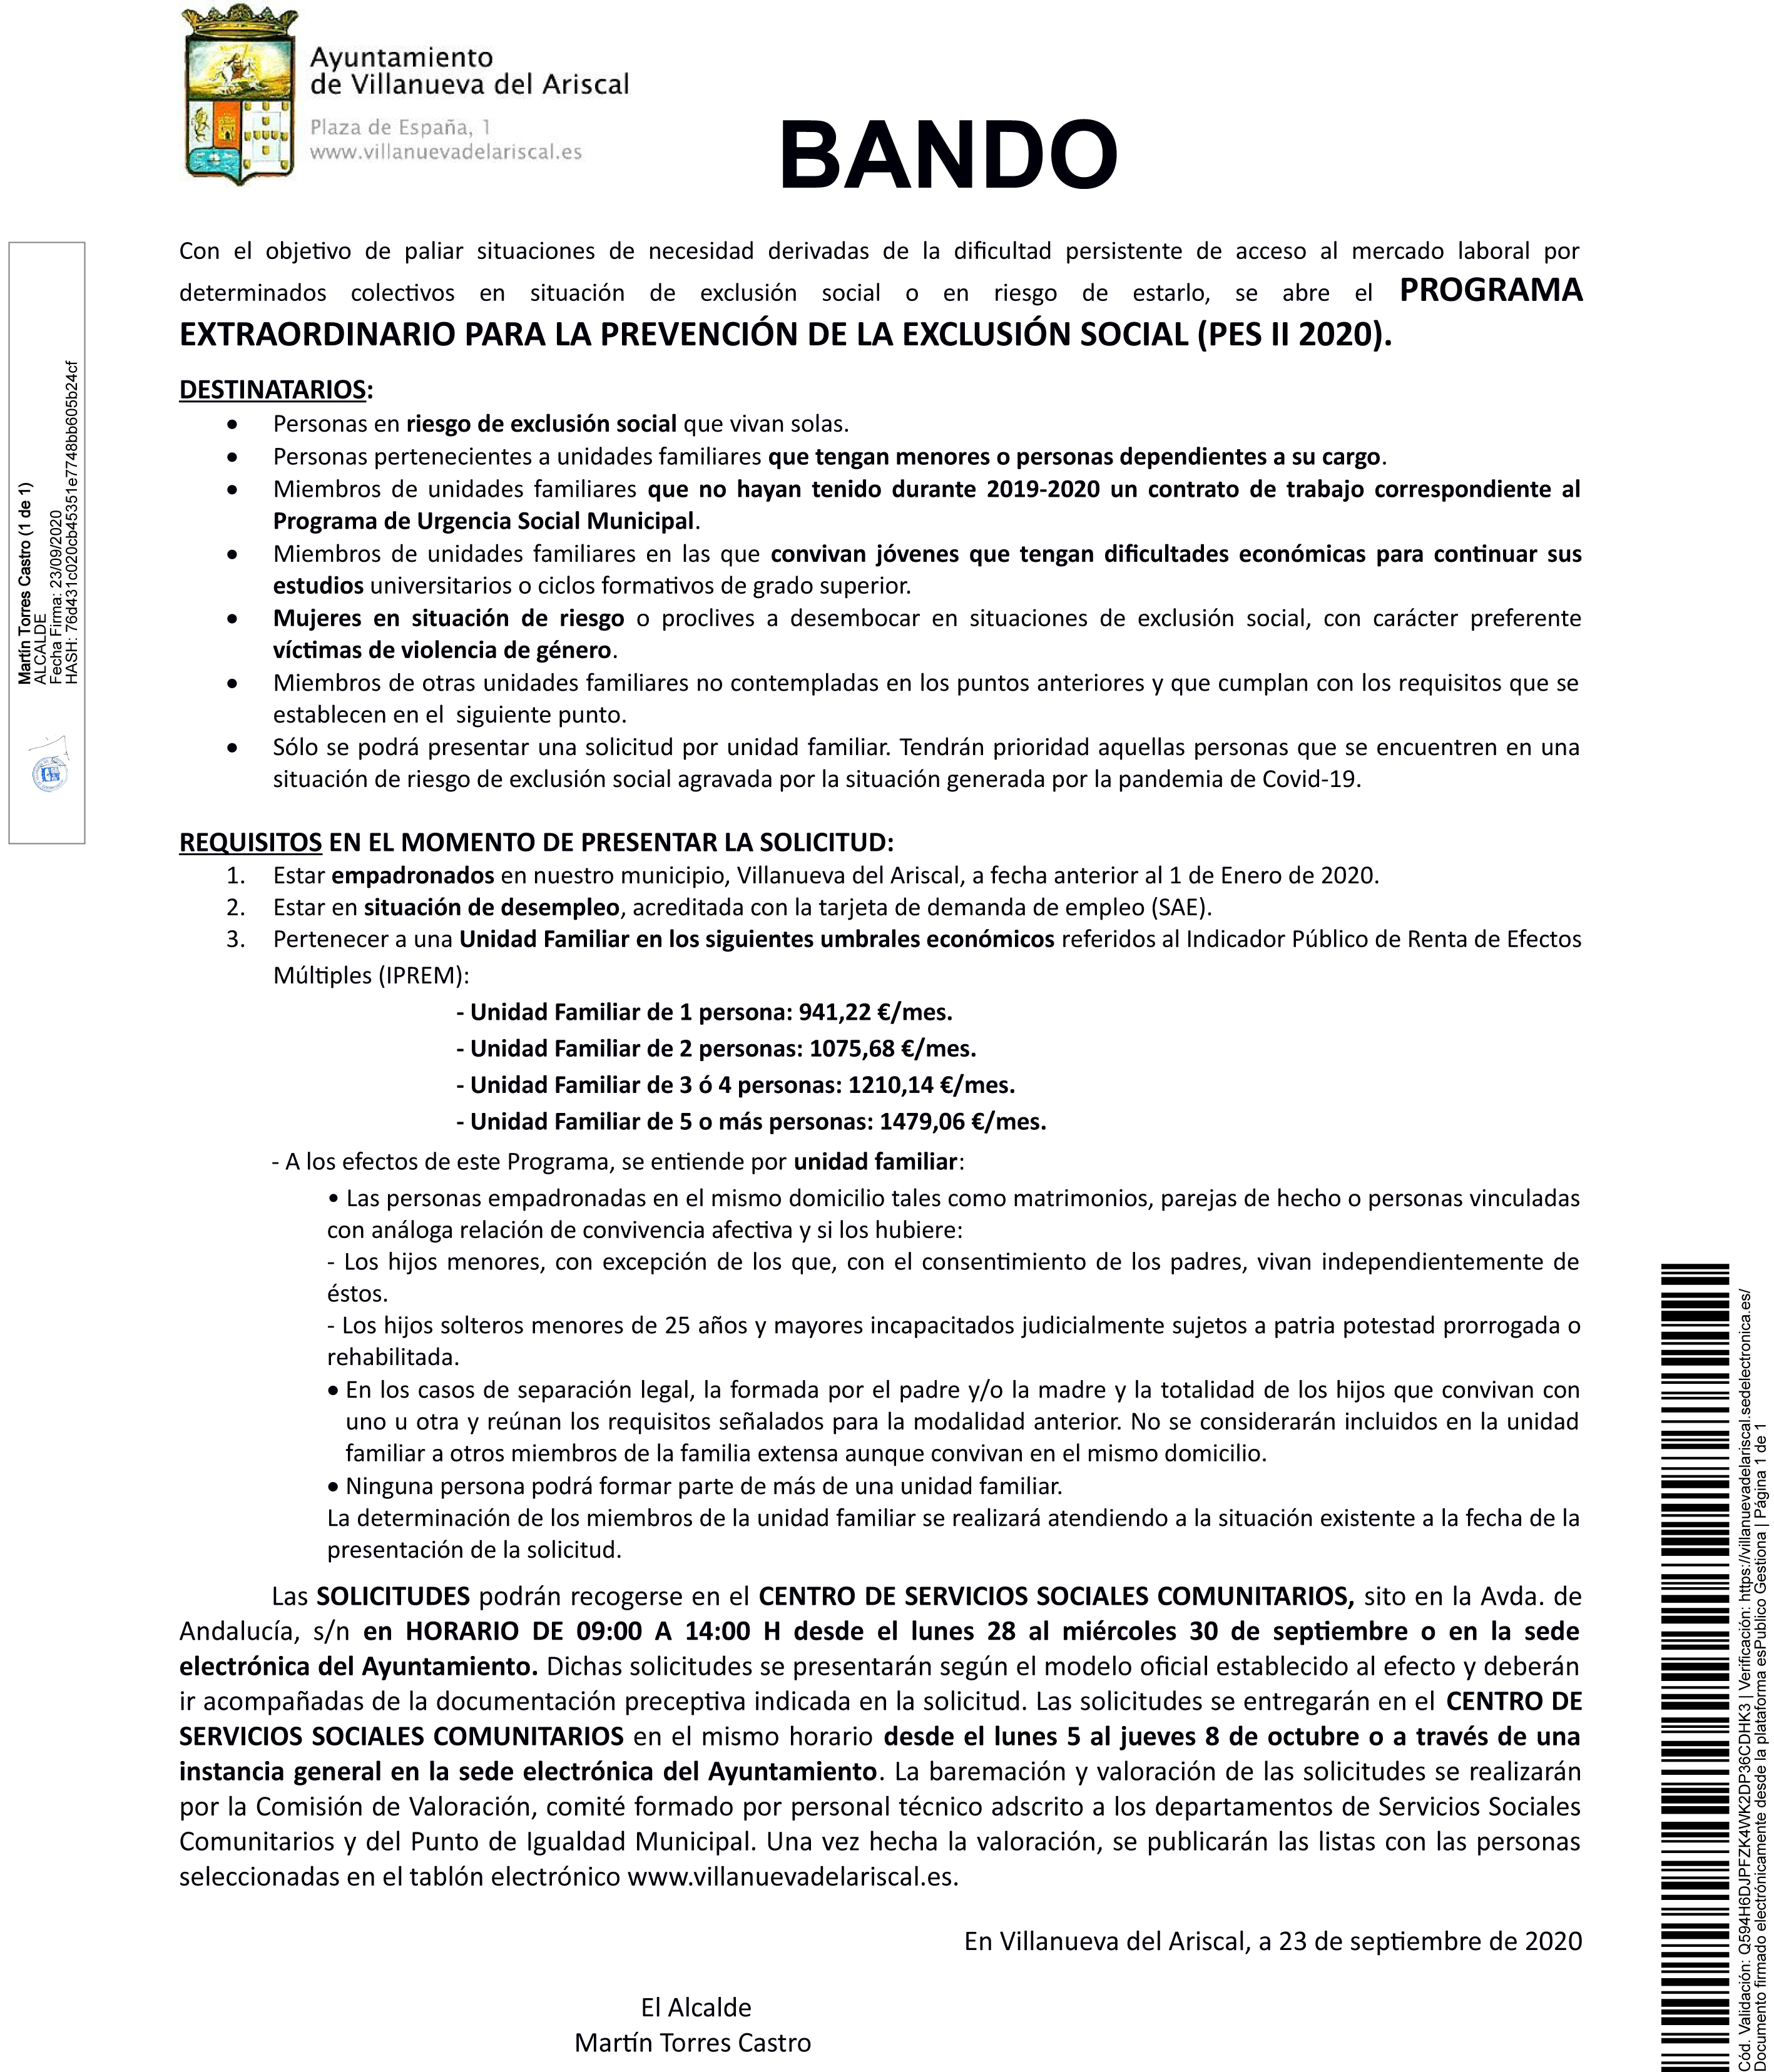 20200923_Publicación_Bando_BANDO PES II 2020